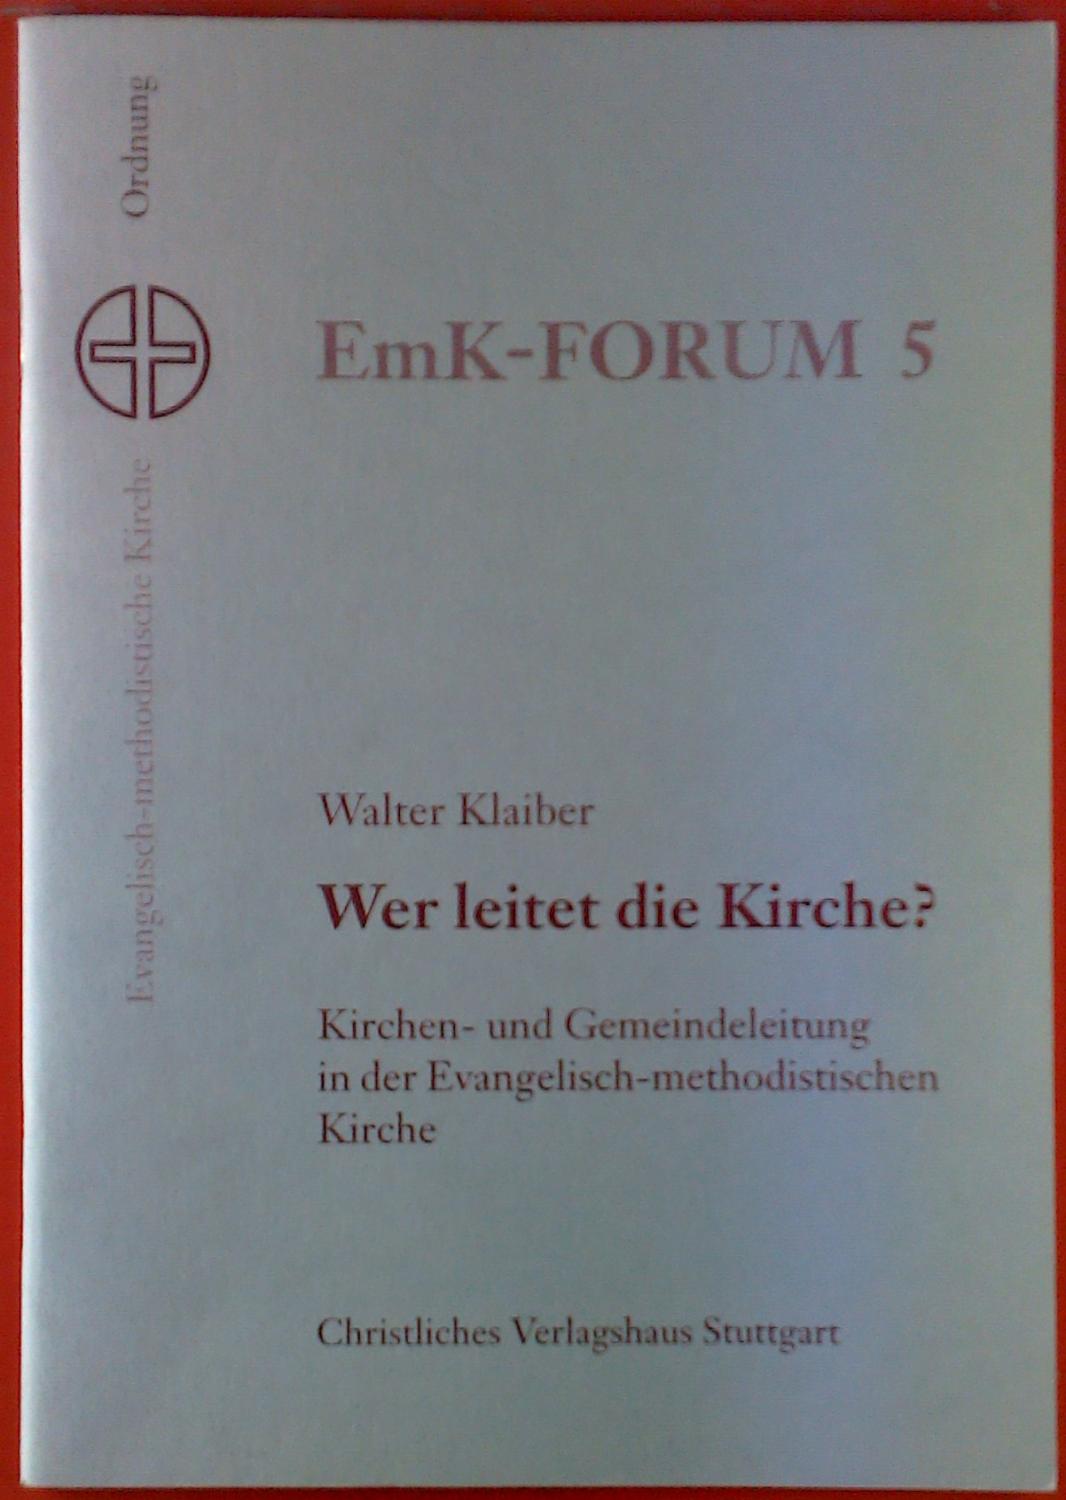 EmK-FORUM 5. Wer leitet die Kirche? Kirchen- und Gemeindeleitung in der Evangelisch-methodistischen Kirche. - Walter Klaiber